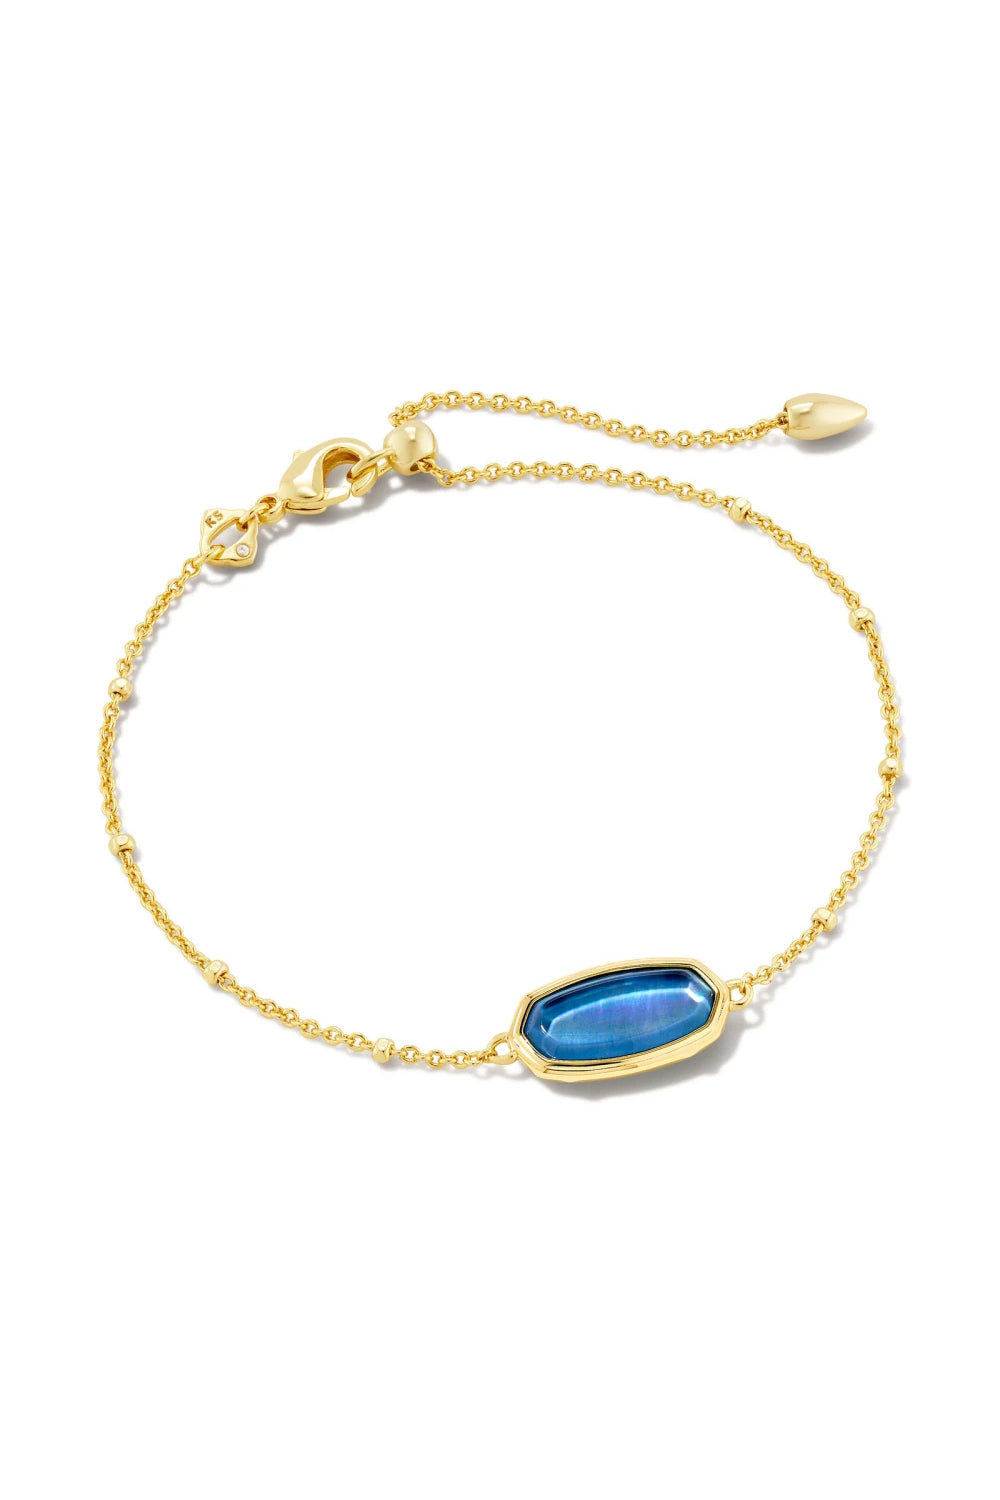 Kendra Scott: Framed Elaina Gold Delicate Chain Bracelet - Dark Blue Mother Of Pearl | Makk Fashions